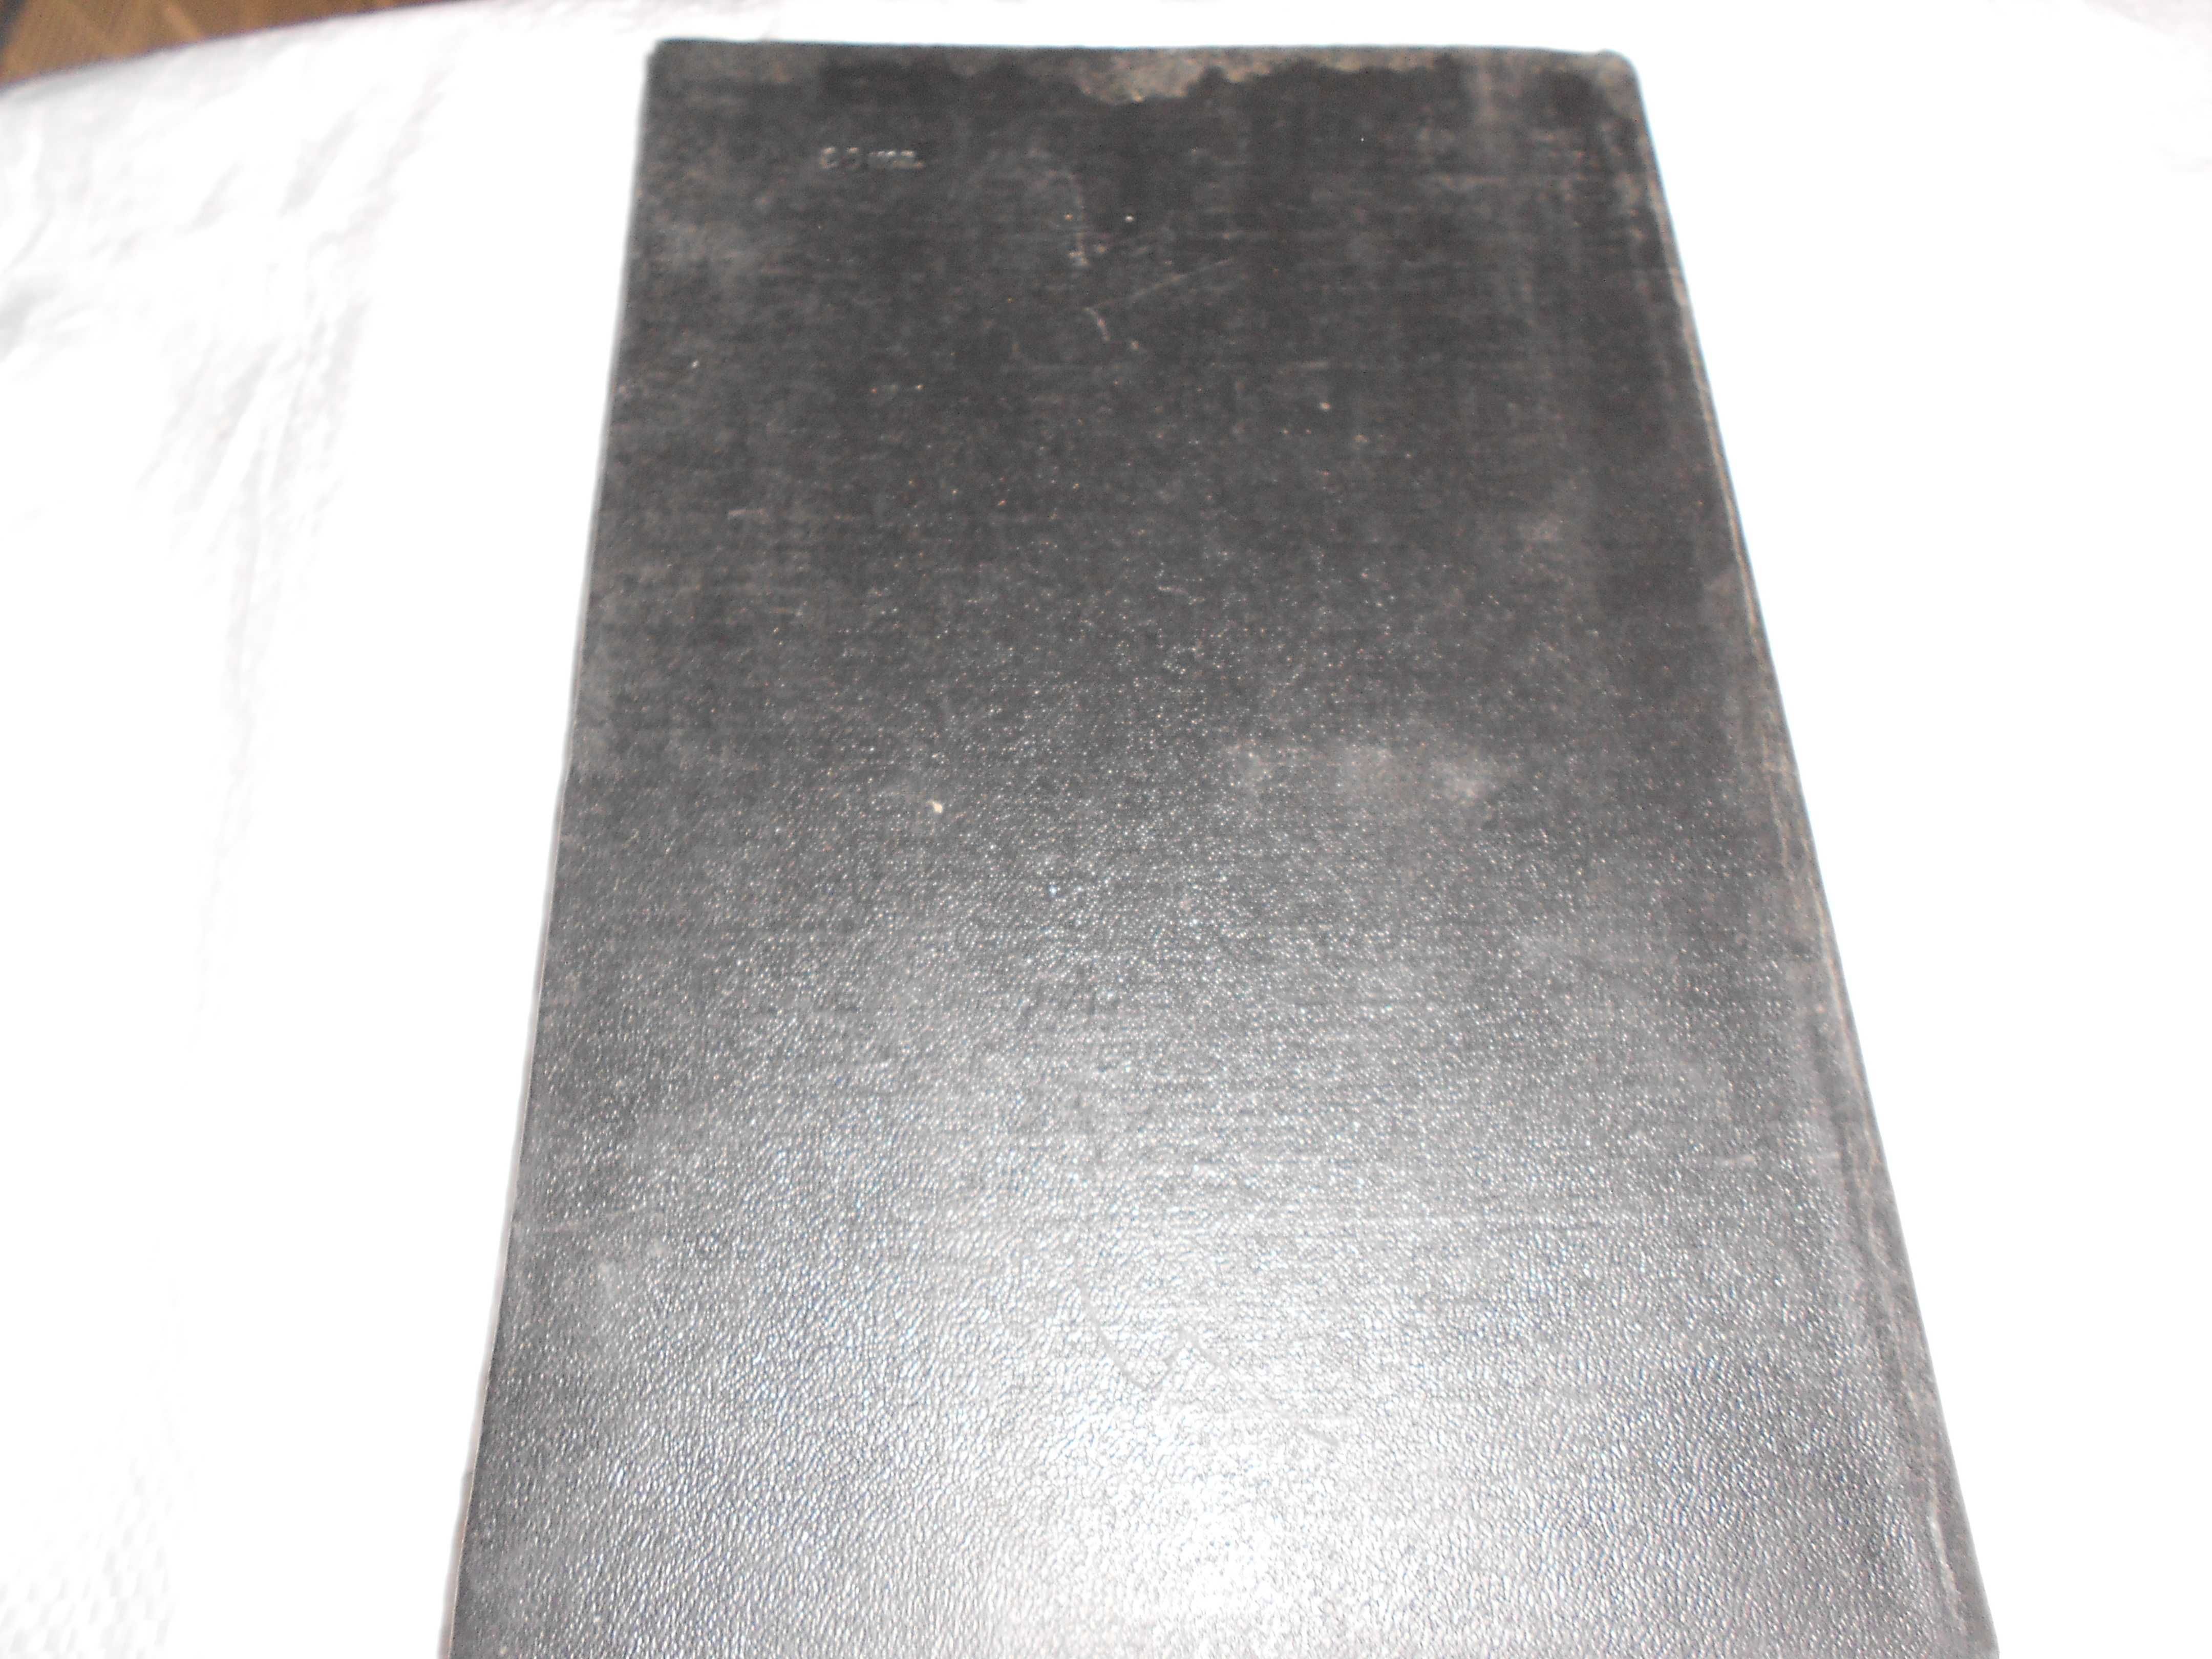 учебник Динамика моря Луговский 1976 3500 экз редкая гидроаэродинамика